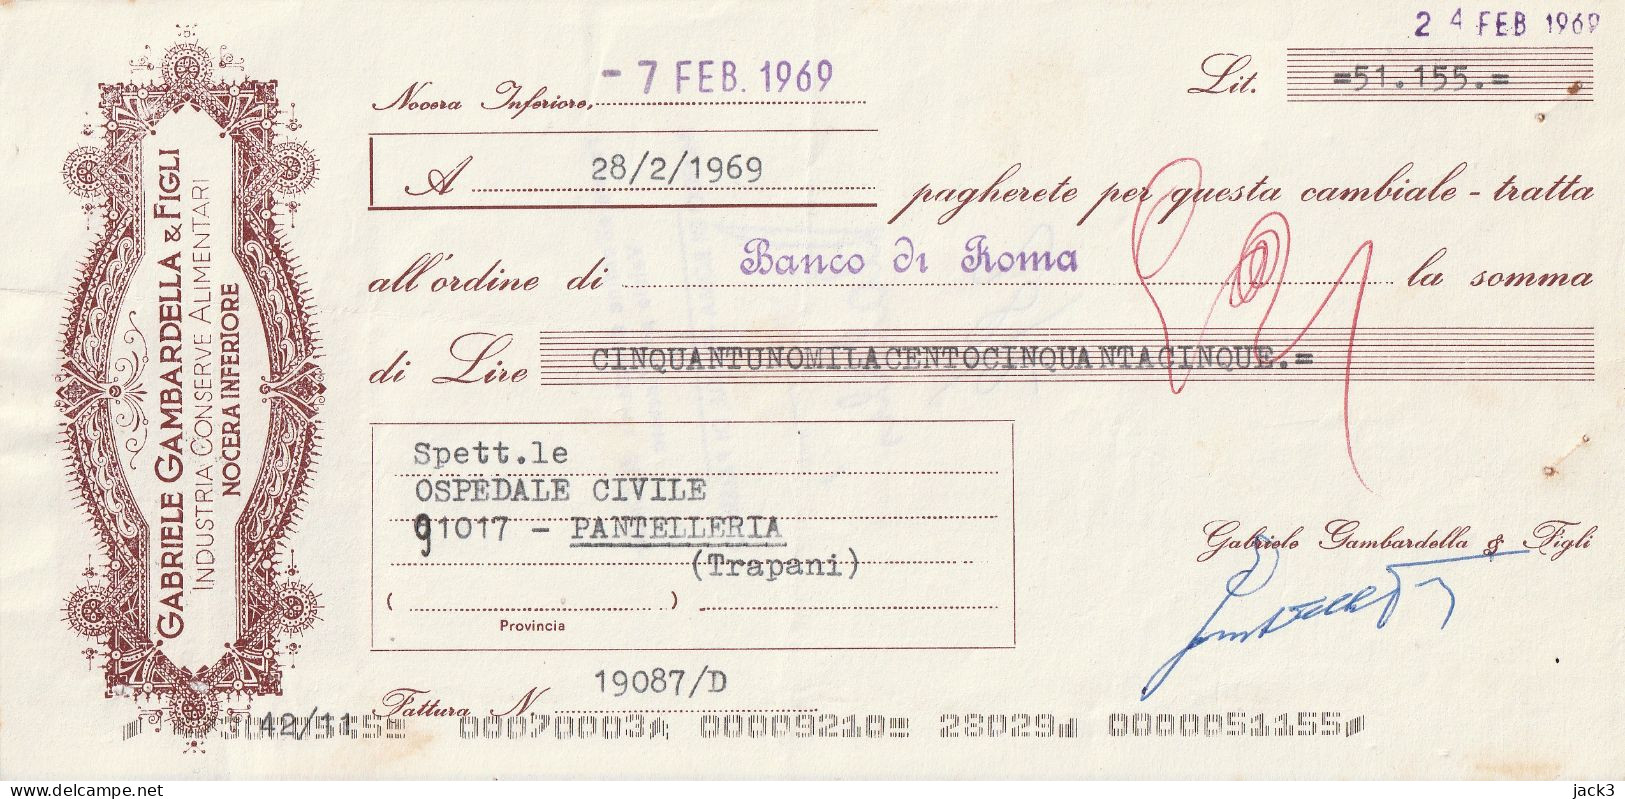 CAMBIALE - BANCO DI ROMA - CAMBIALE CON TASSELLO PUBBLICITARIO - NOCERA INFERIORE 1969 - Cheques & Traveler's Cheques